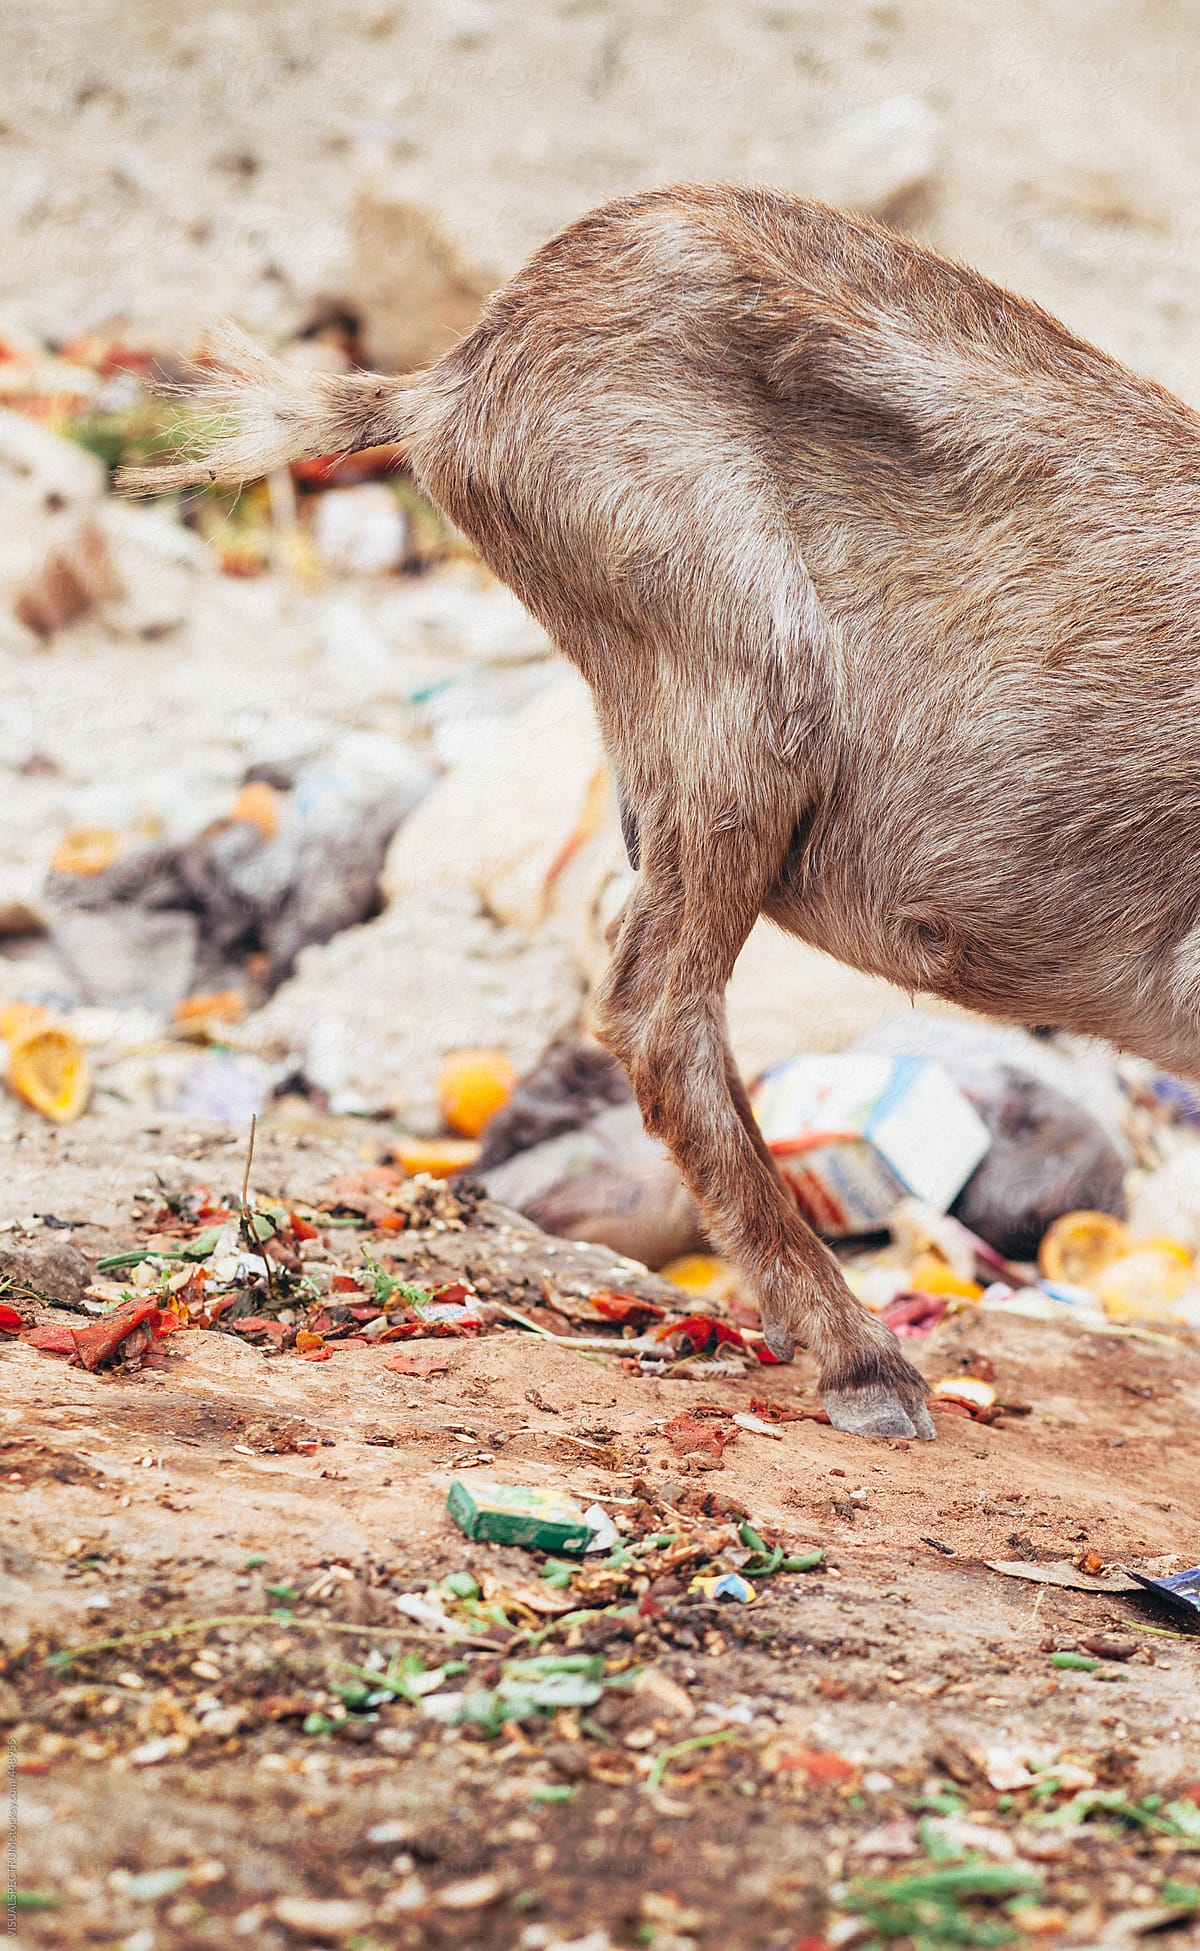 Goat Eating Garbage in Landfill